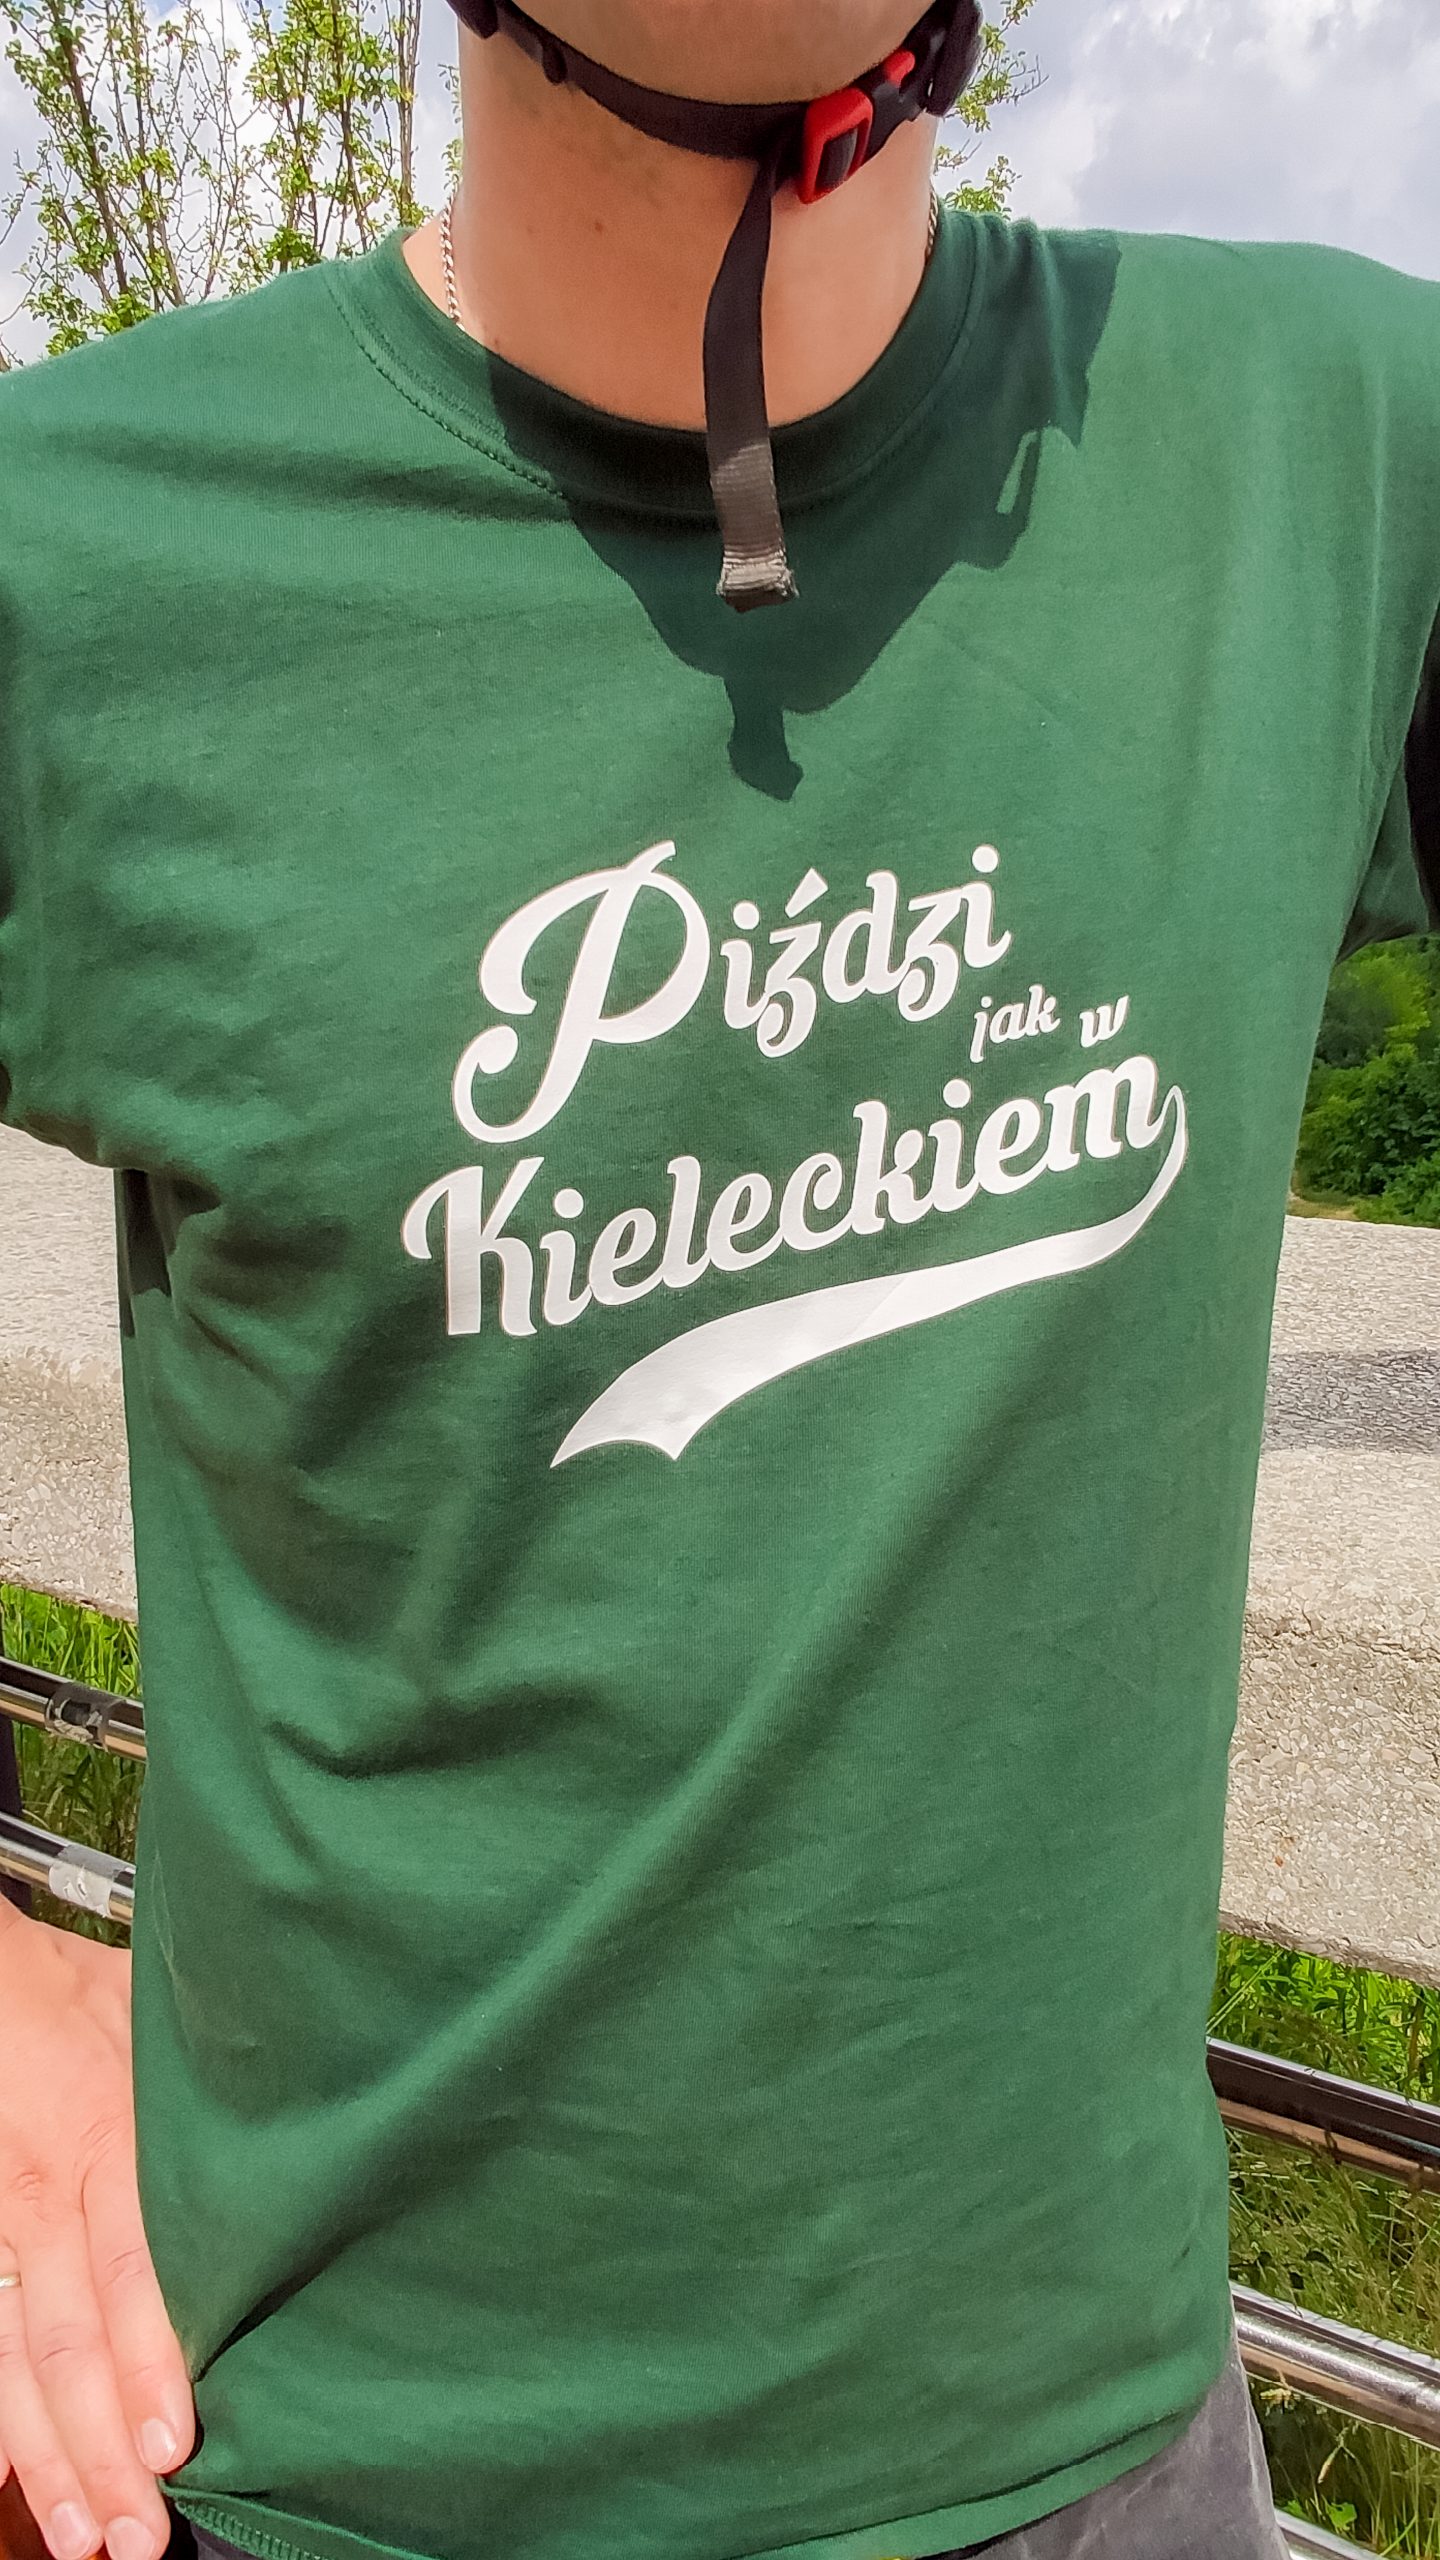 Zielona koszulka z napisem: "Piździ jak w Kieleckiem".